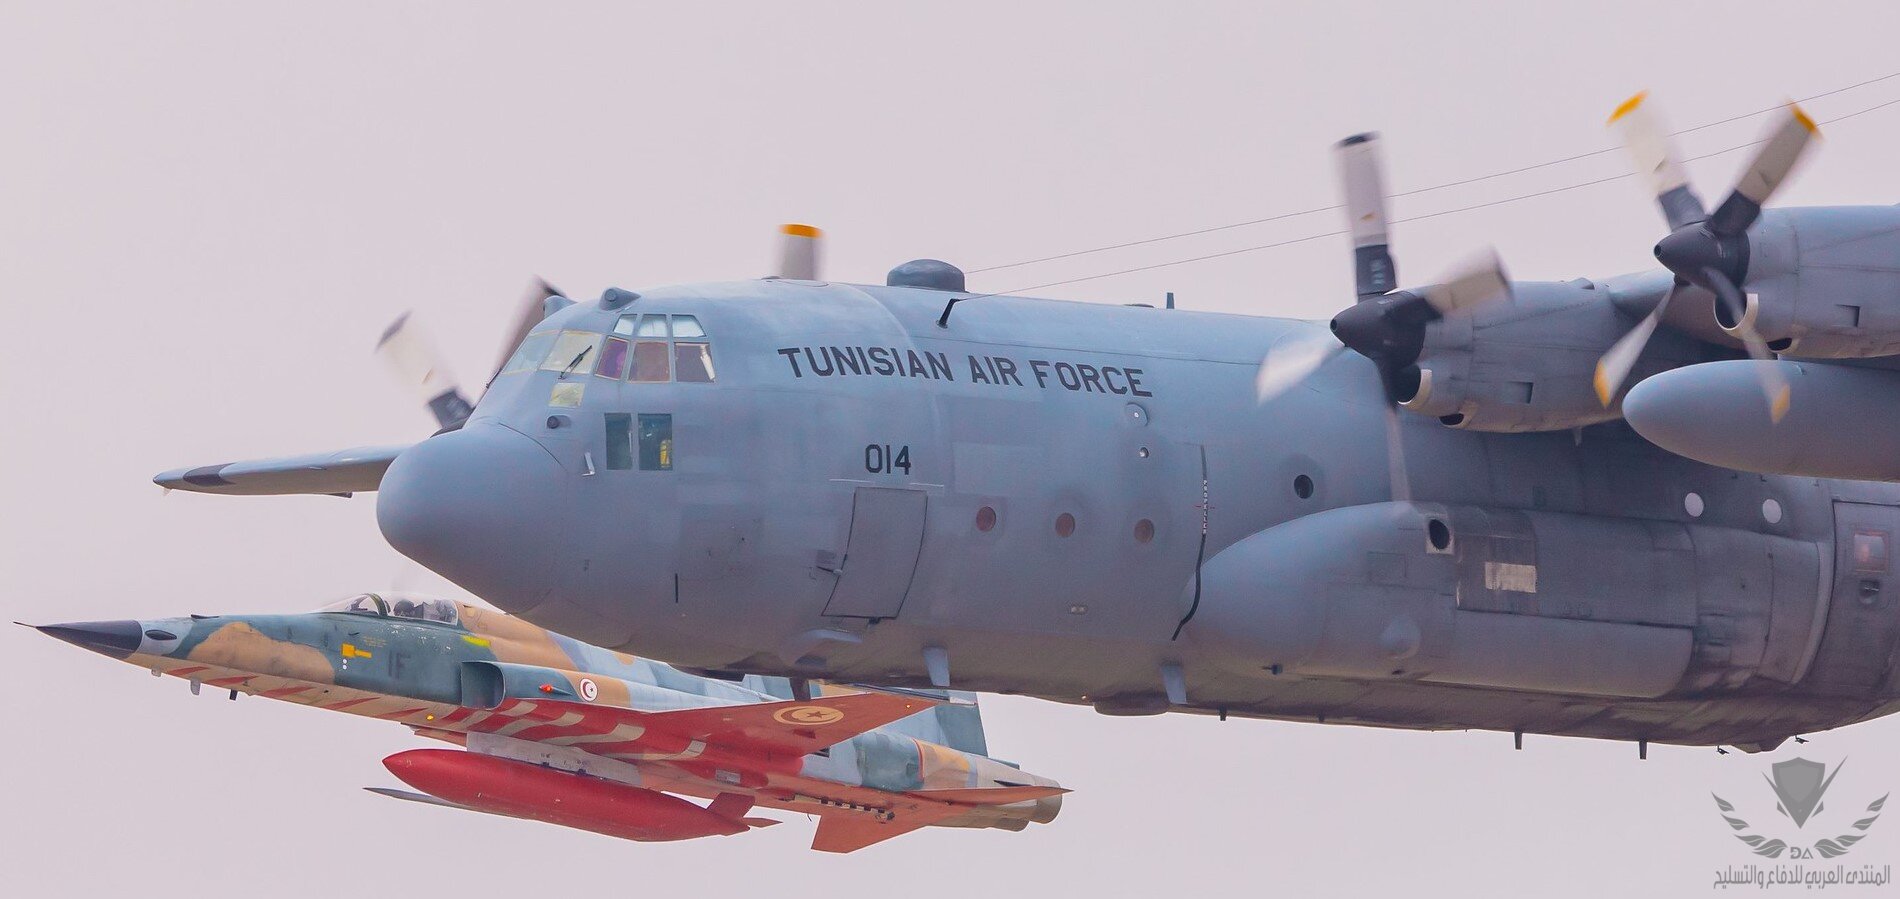 TUNISIAN AIR FORCE